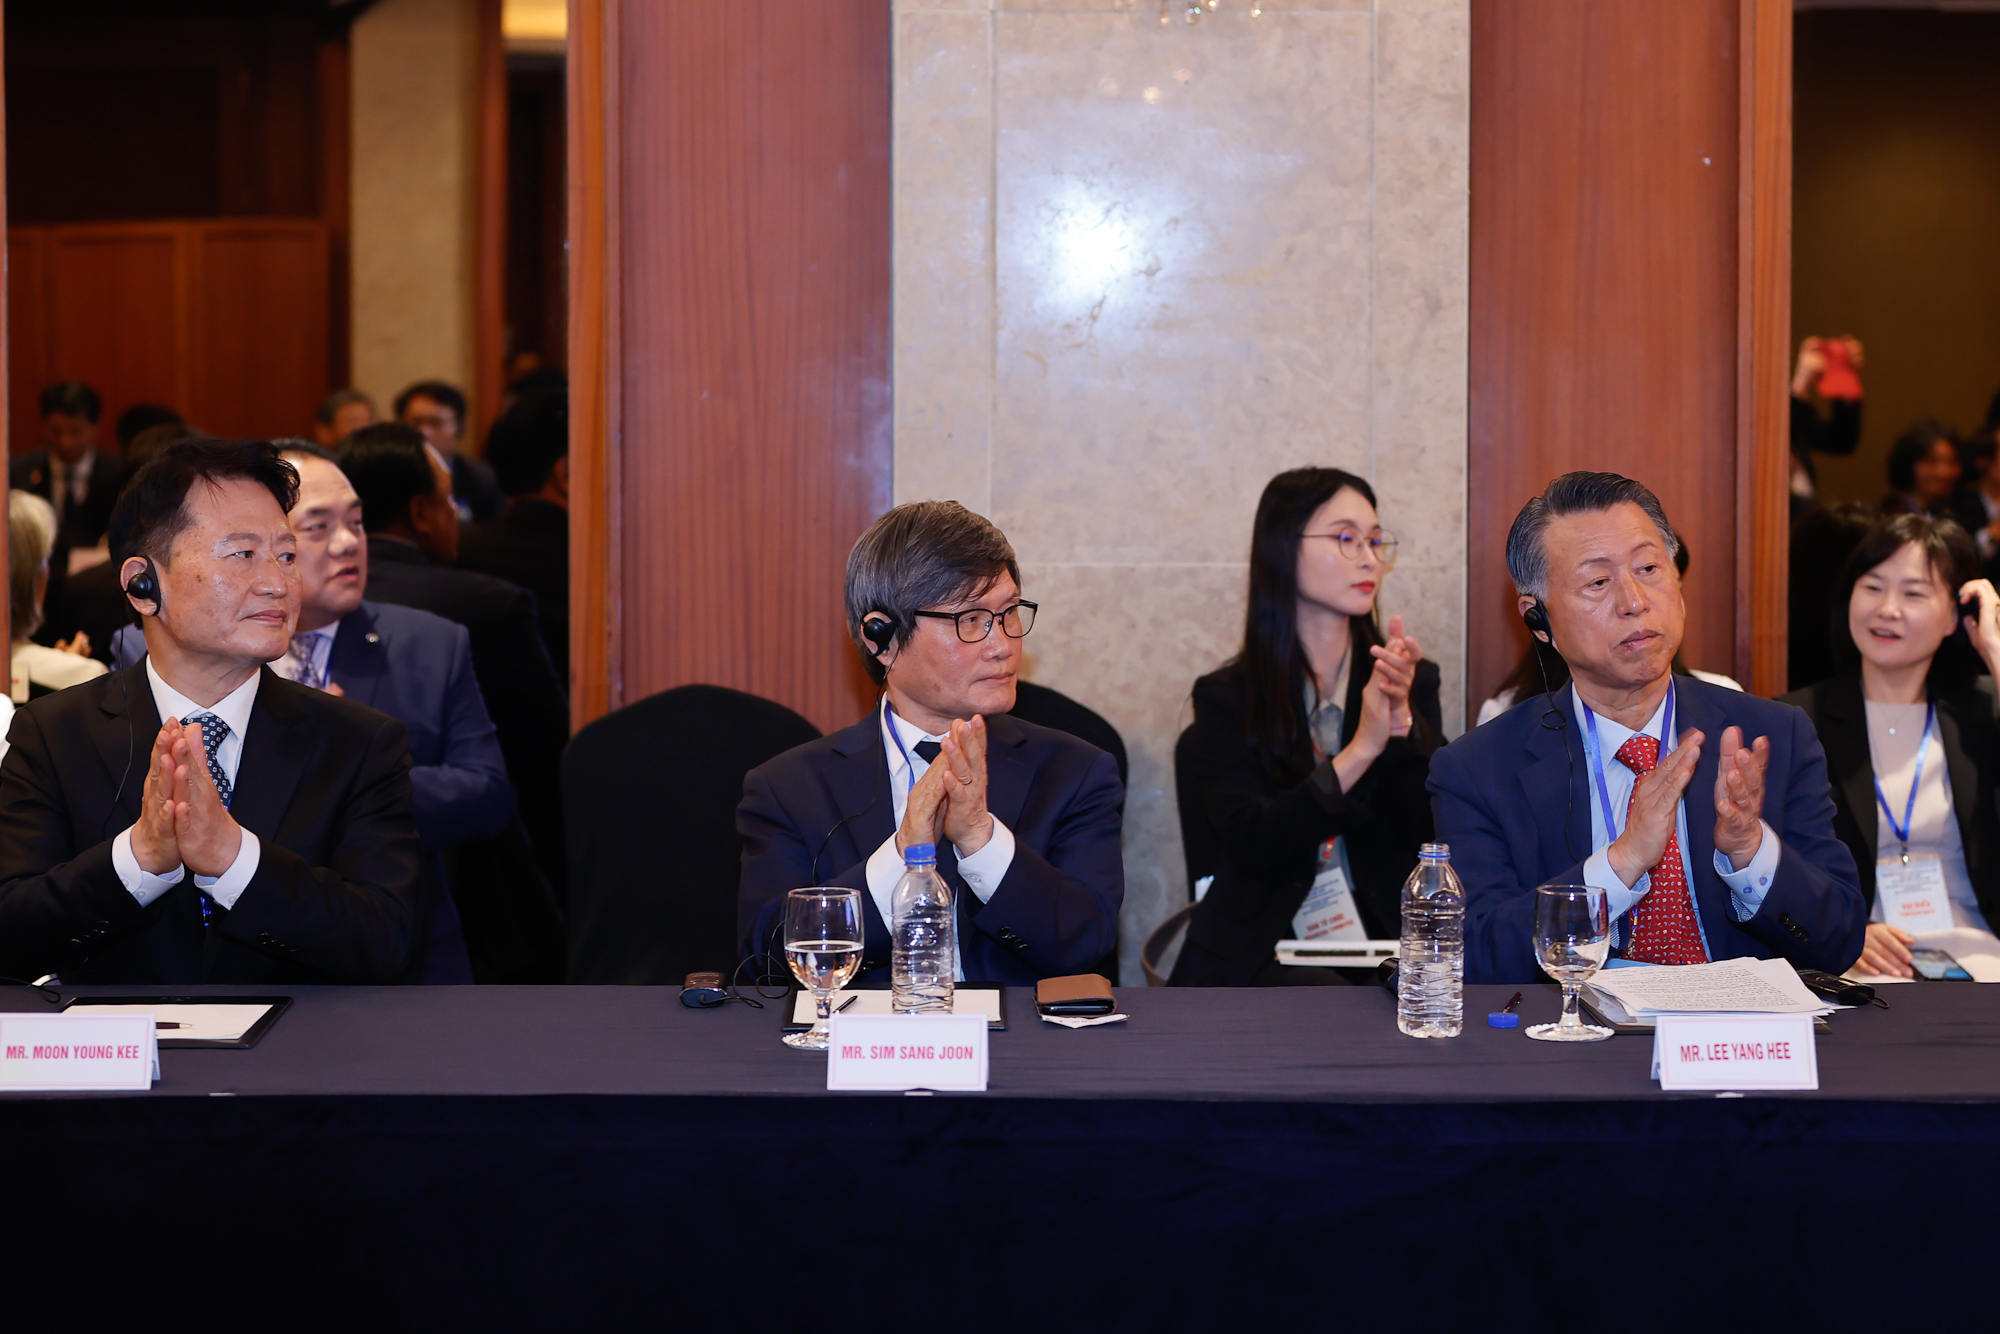 Những người bạn Hàn Quốc nhiệt liệt chào mừng Thủ tướng và các đại biểu tới thăm Hàn Quốc, đánh giá cao nỗ lực vươn lên và những thành tựu phát triển mạnh mẽ của Việt Nam - Ảnh: VGP/Nhật Bắc